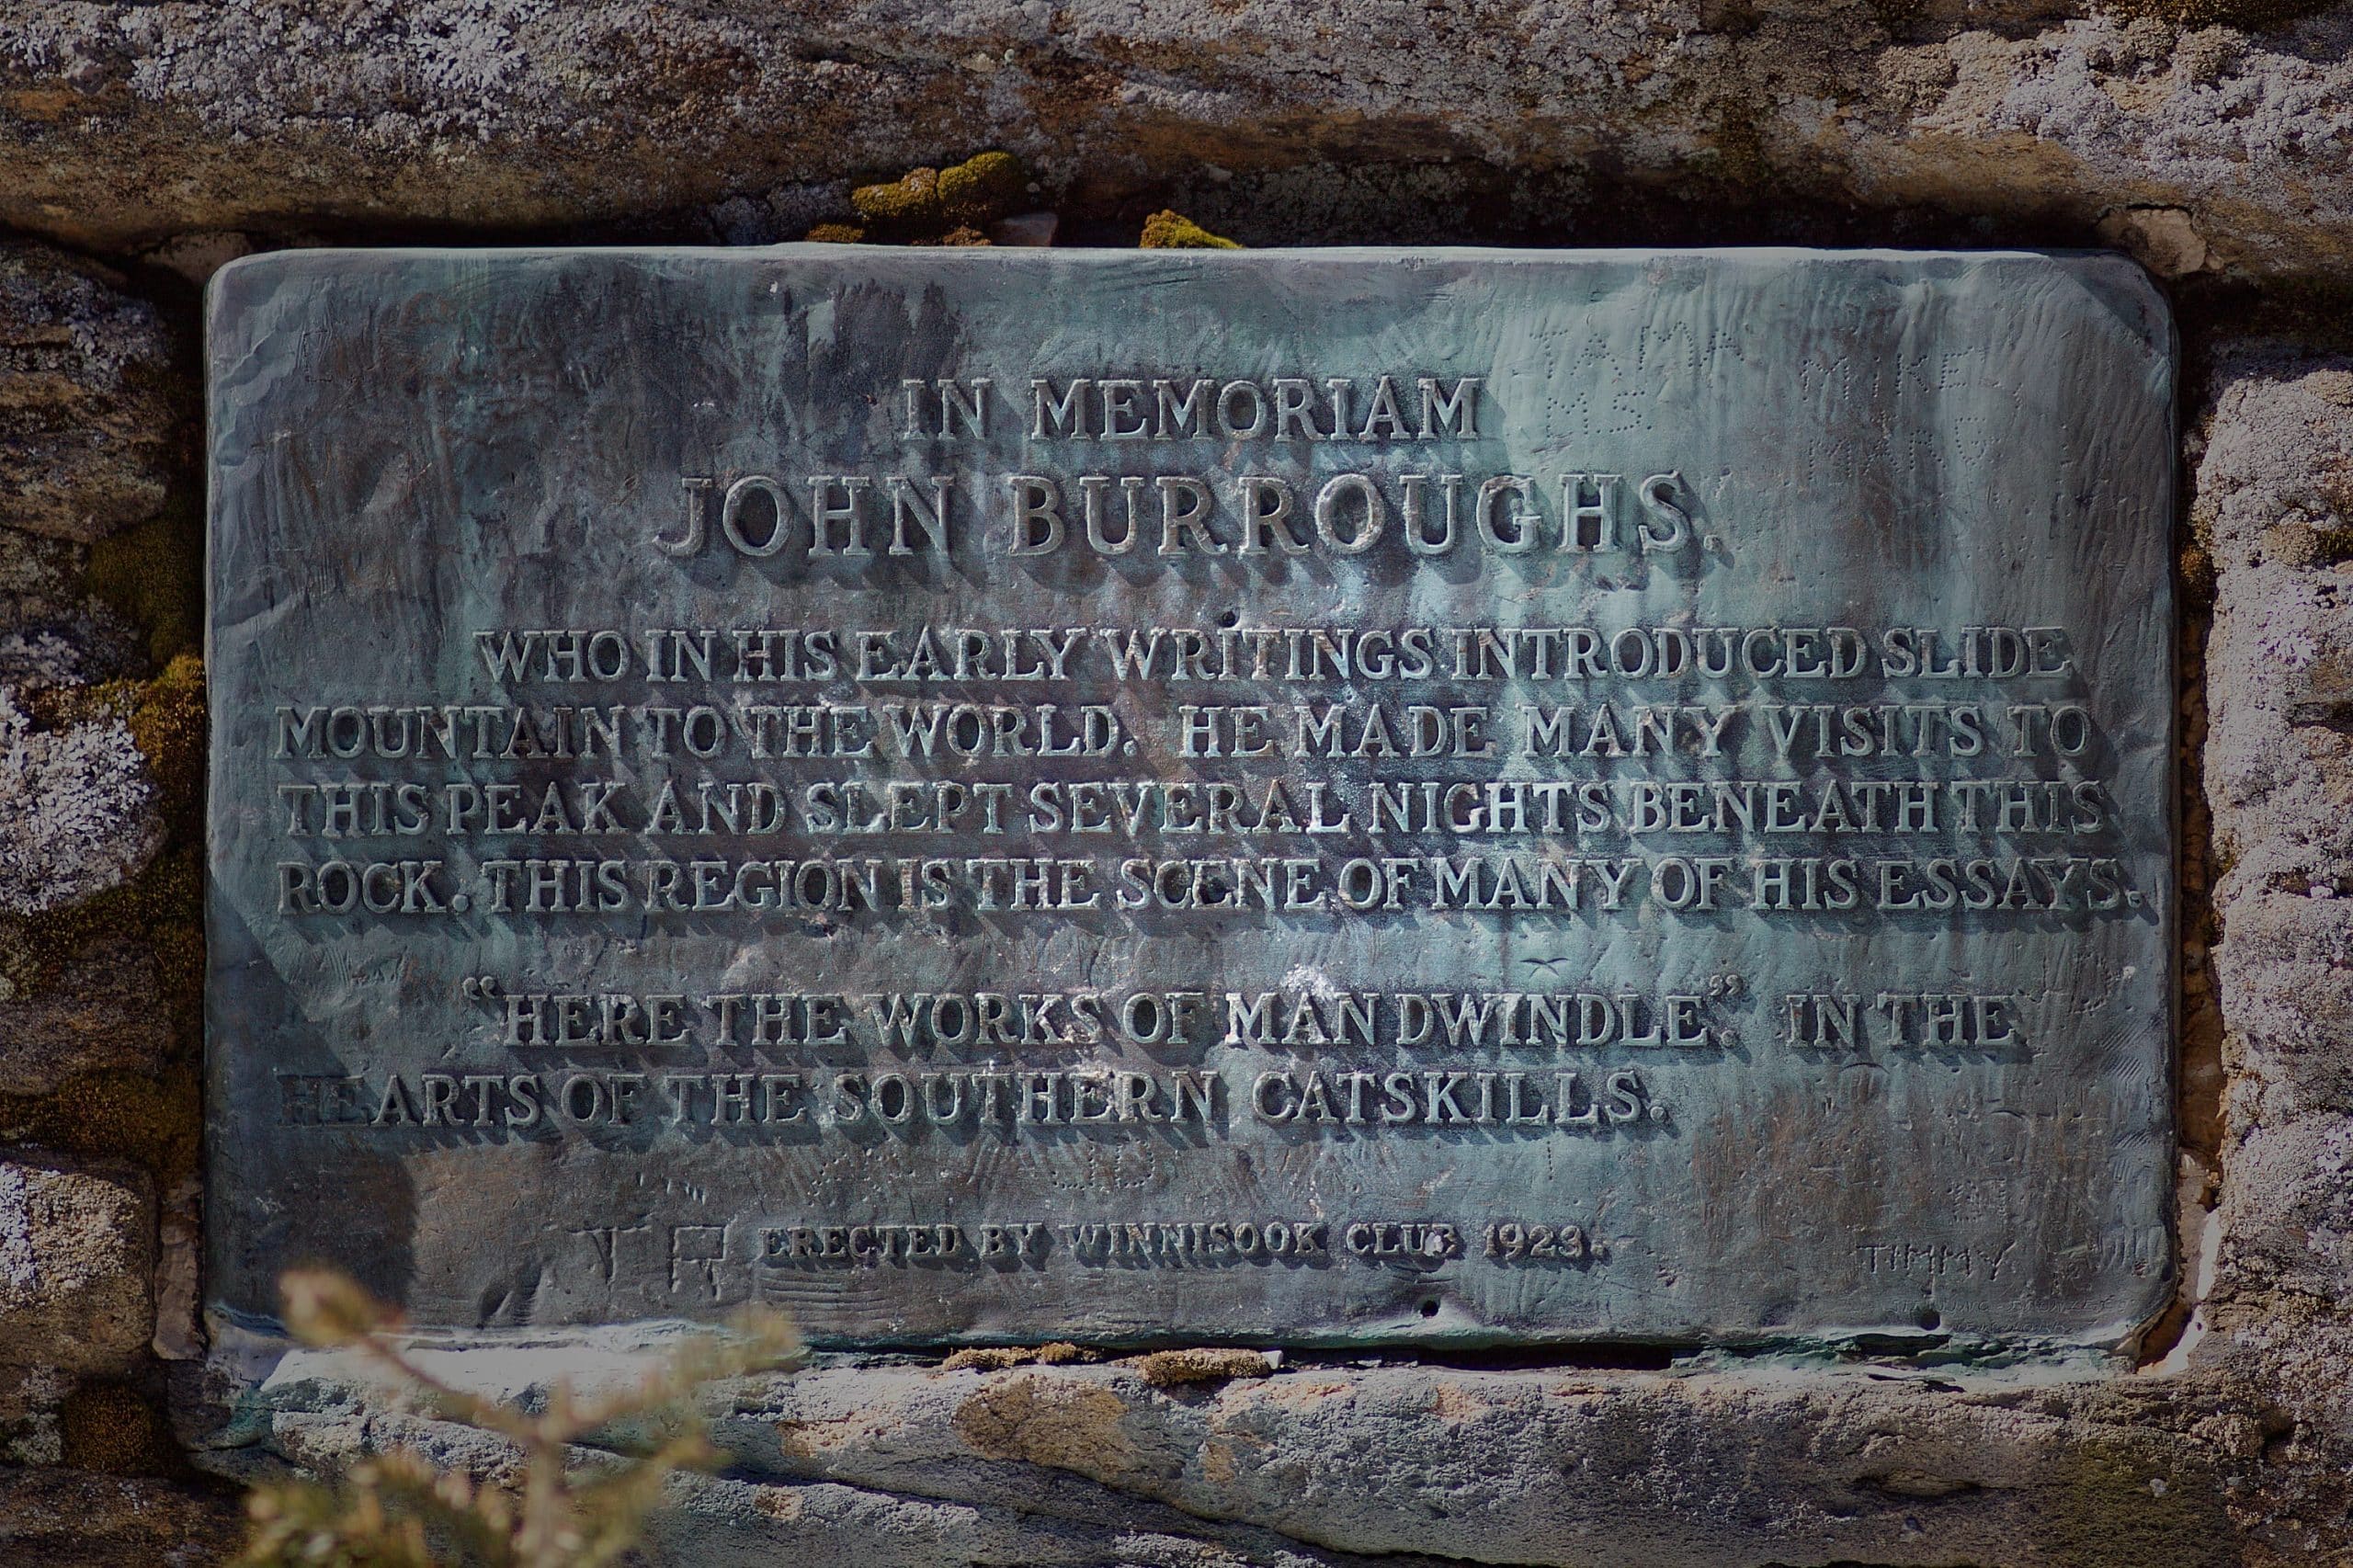 In Memoriam: John Burroughs